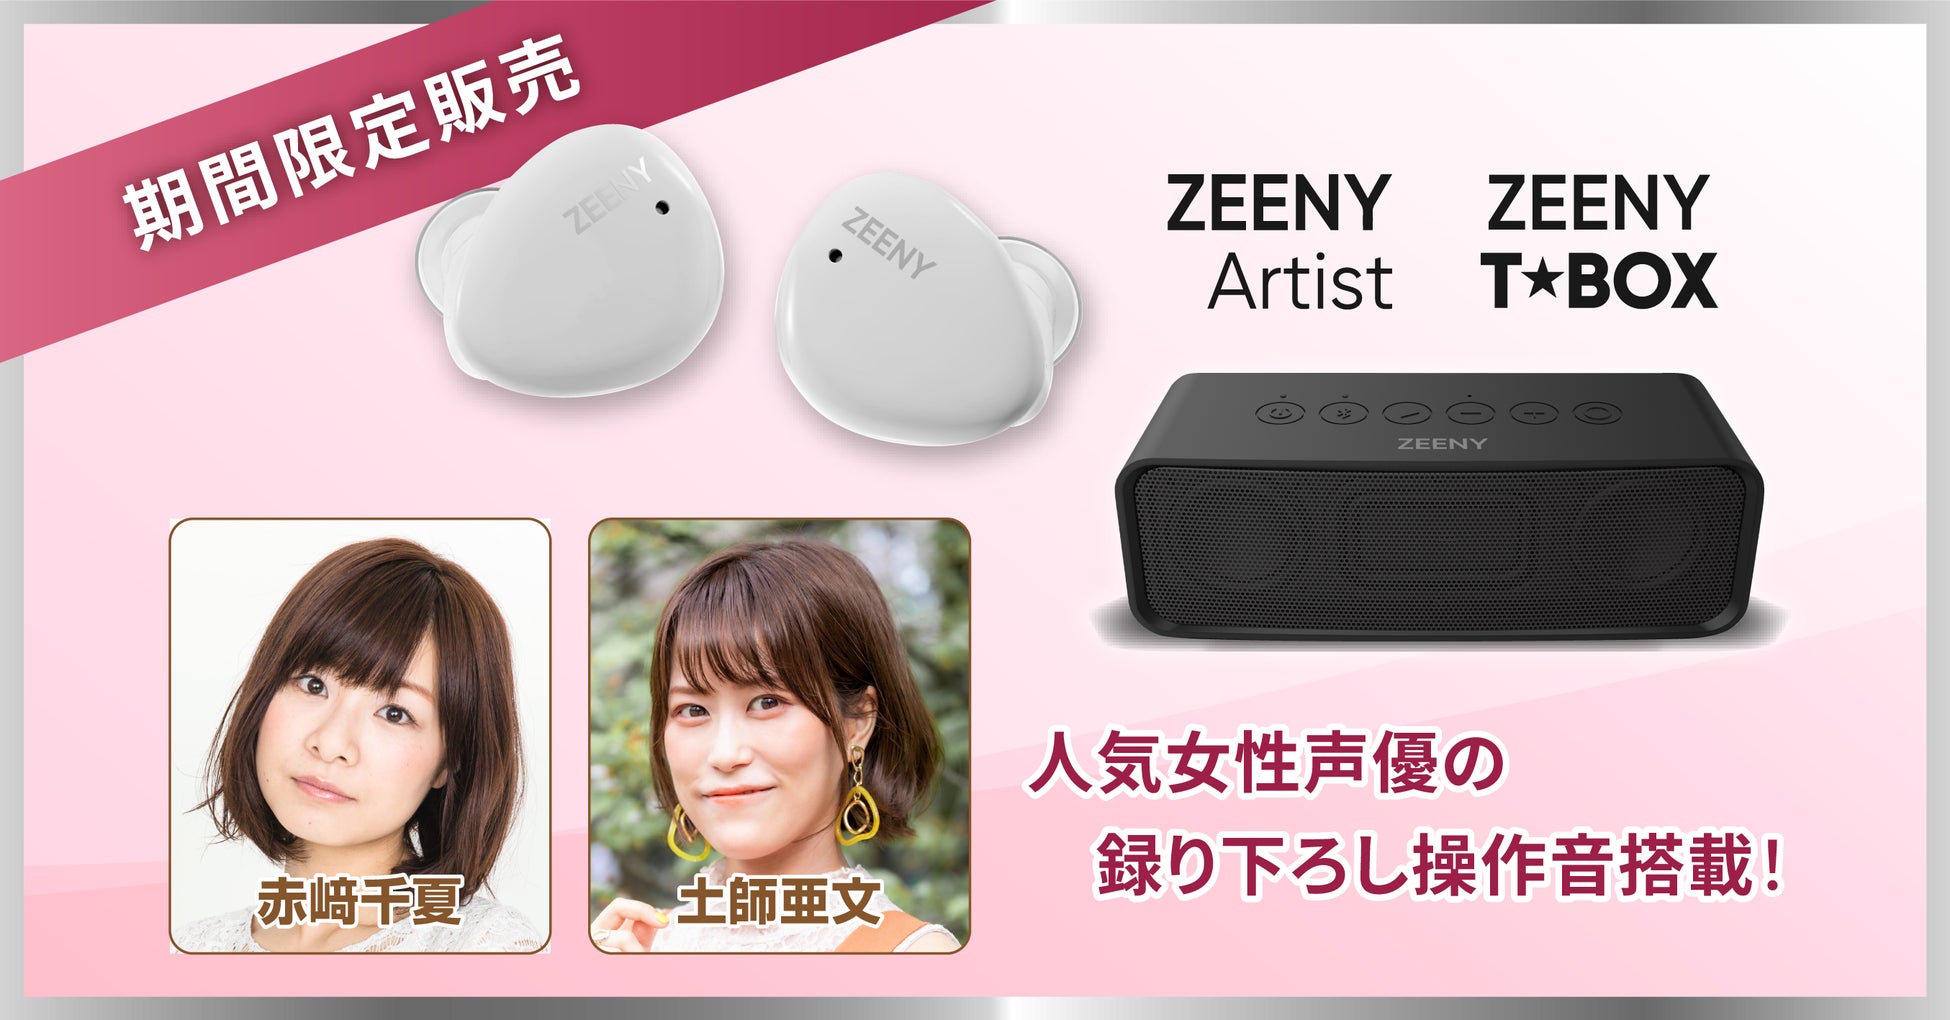 人気声優『赤﨑 千夏』『土師 亜文』の録り下ろし音声を搭載したワイヤレスイヤフォン「Zeeny Artist」と、Bluetoothスピーカー「Zeeny T★Box」を期間限定で販売